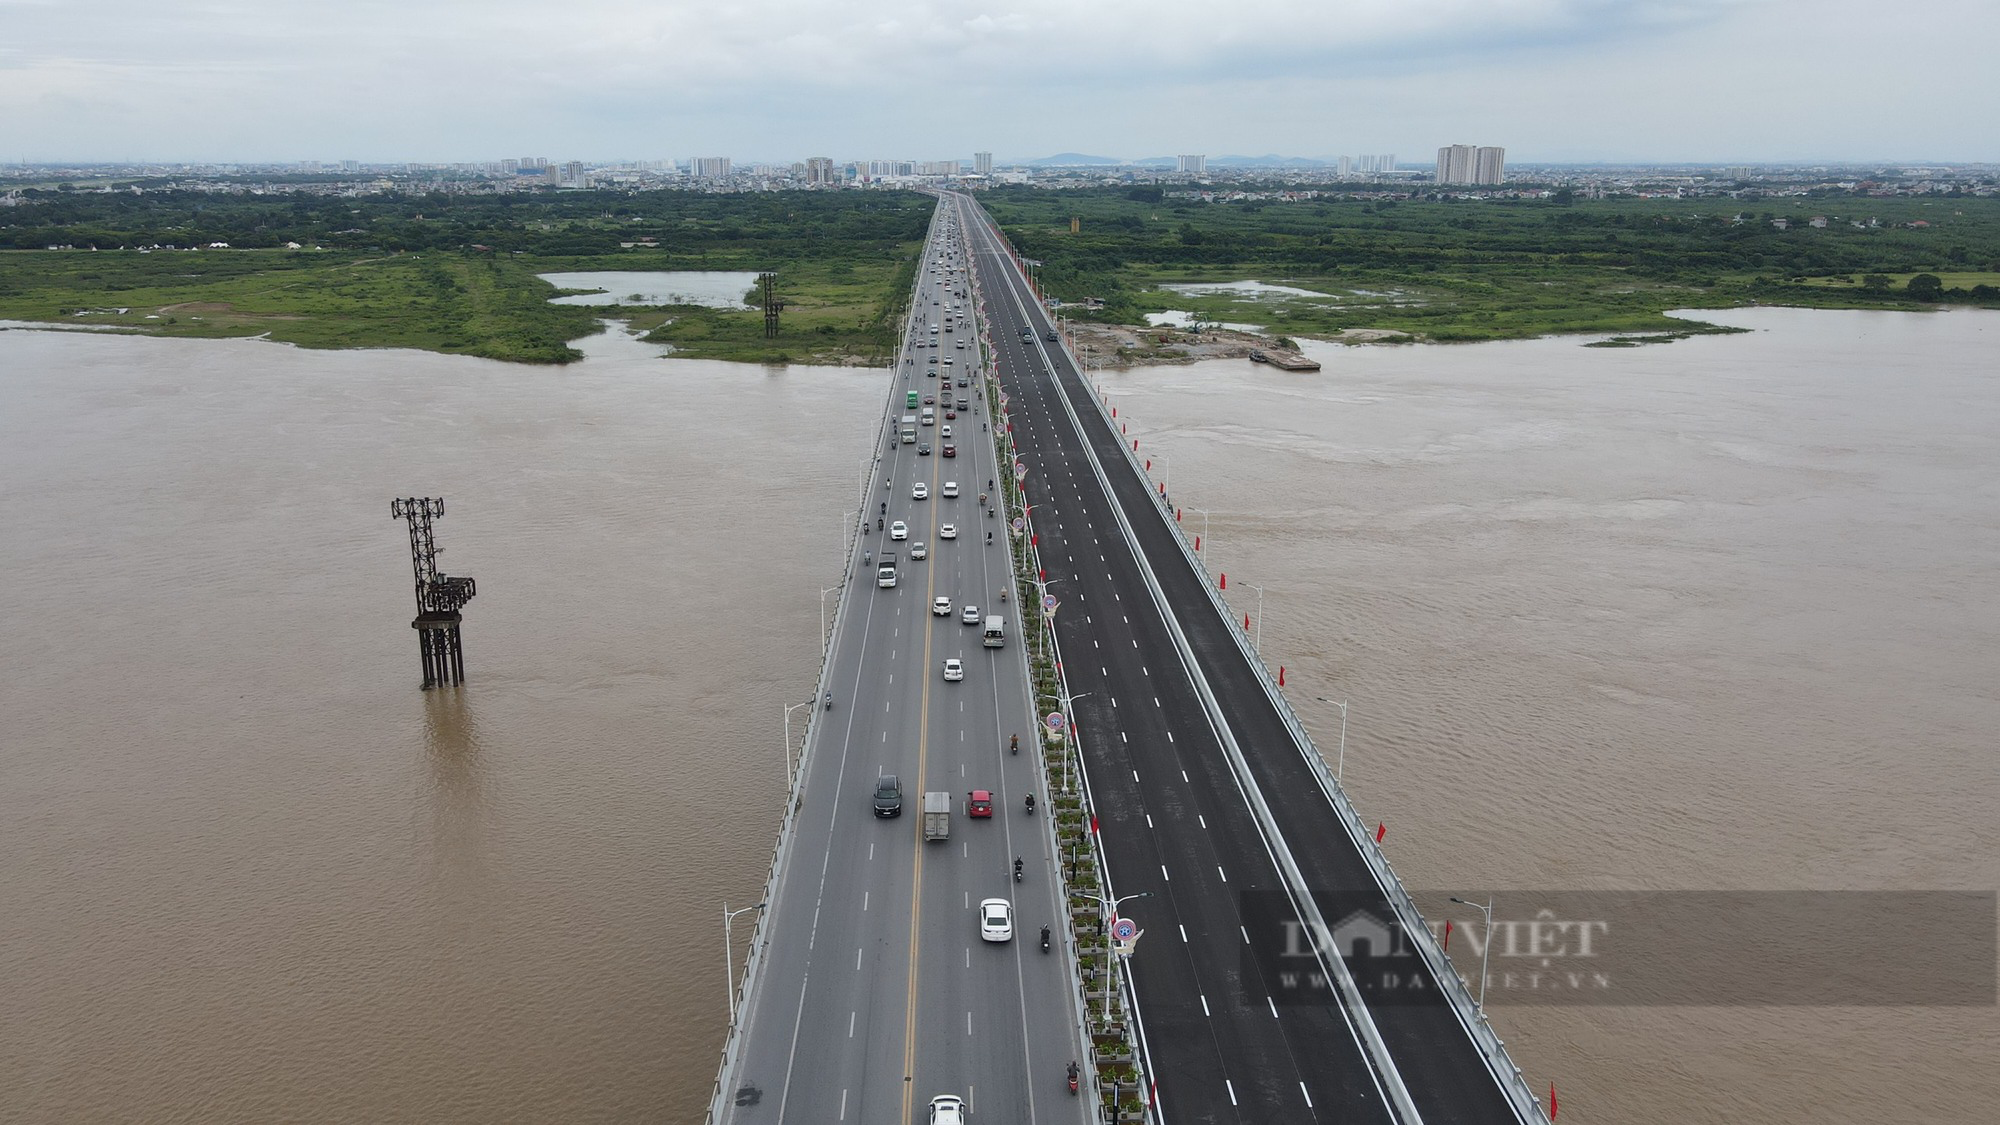 Sáng nay (30/8), Hà Nội khánh thành cầu Vĩnh Tuy 2 vượt sông Hồng trị giá 2.500 tỷ đồng - Ảnh 4.